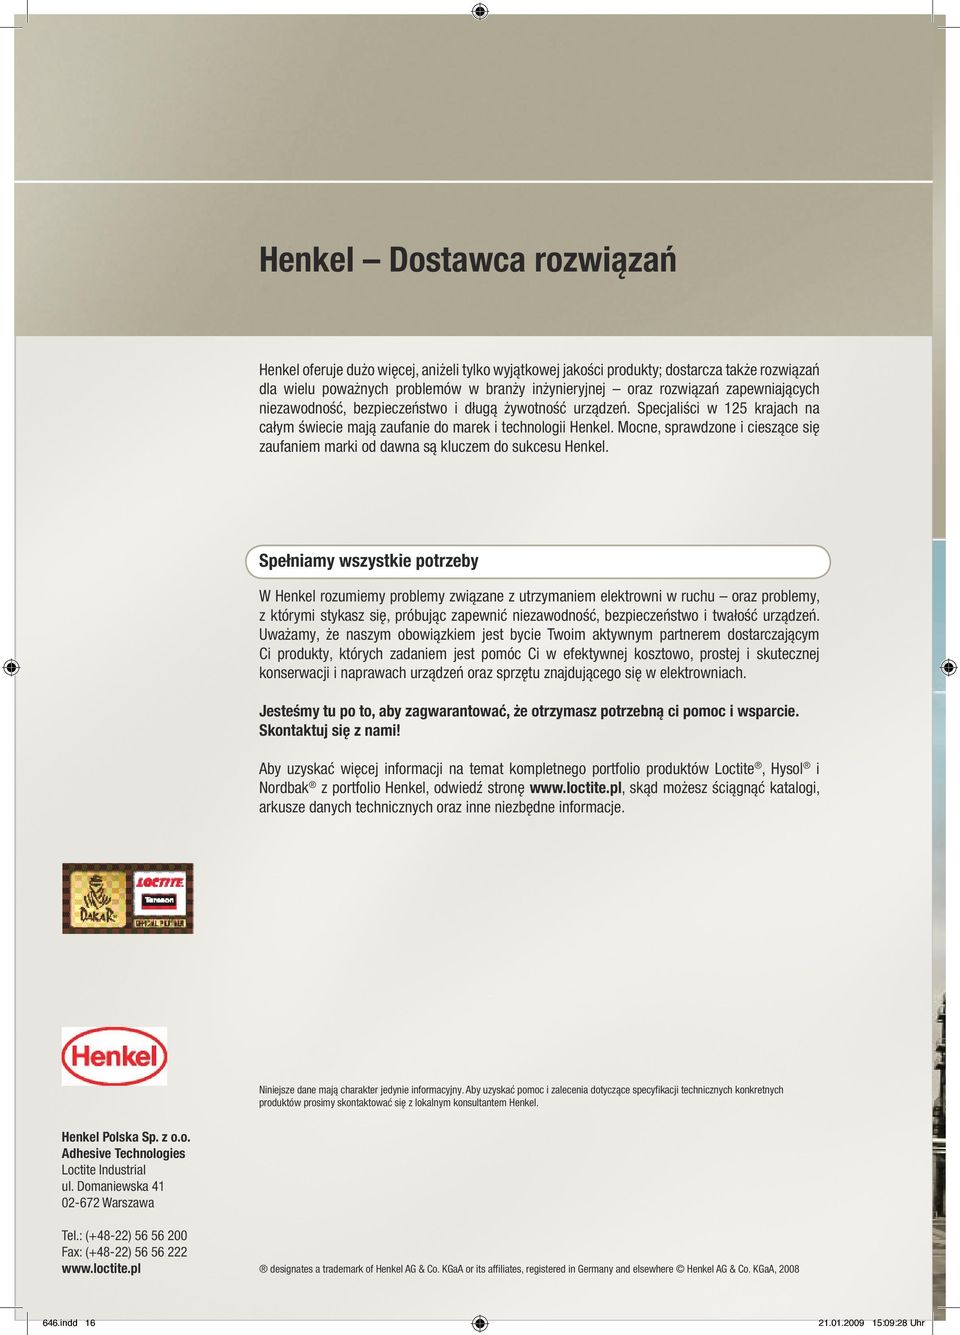 Mocne, sprawdzone i cieszące się zaufaniem marki od dawna są kluczem do sukcesu Henkel.